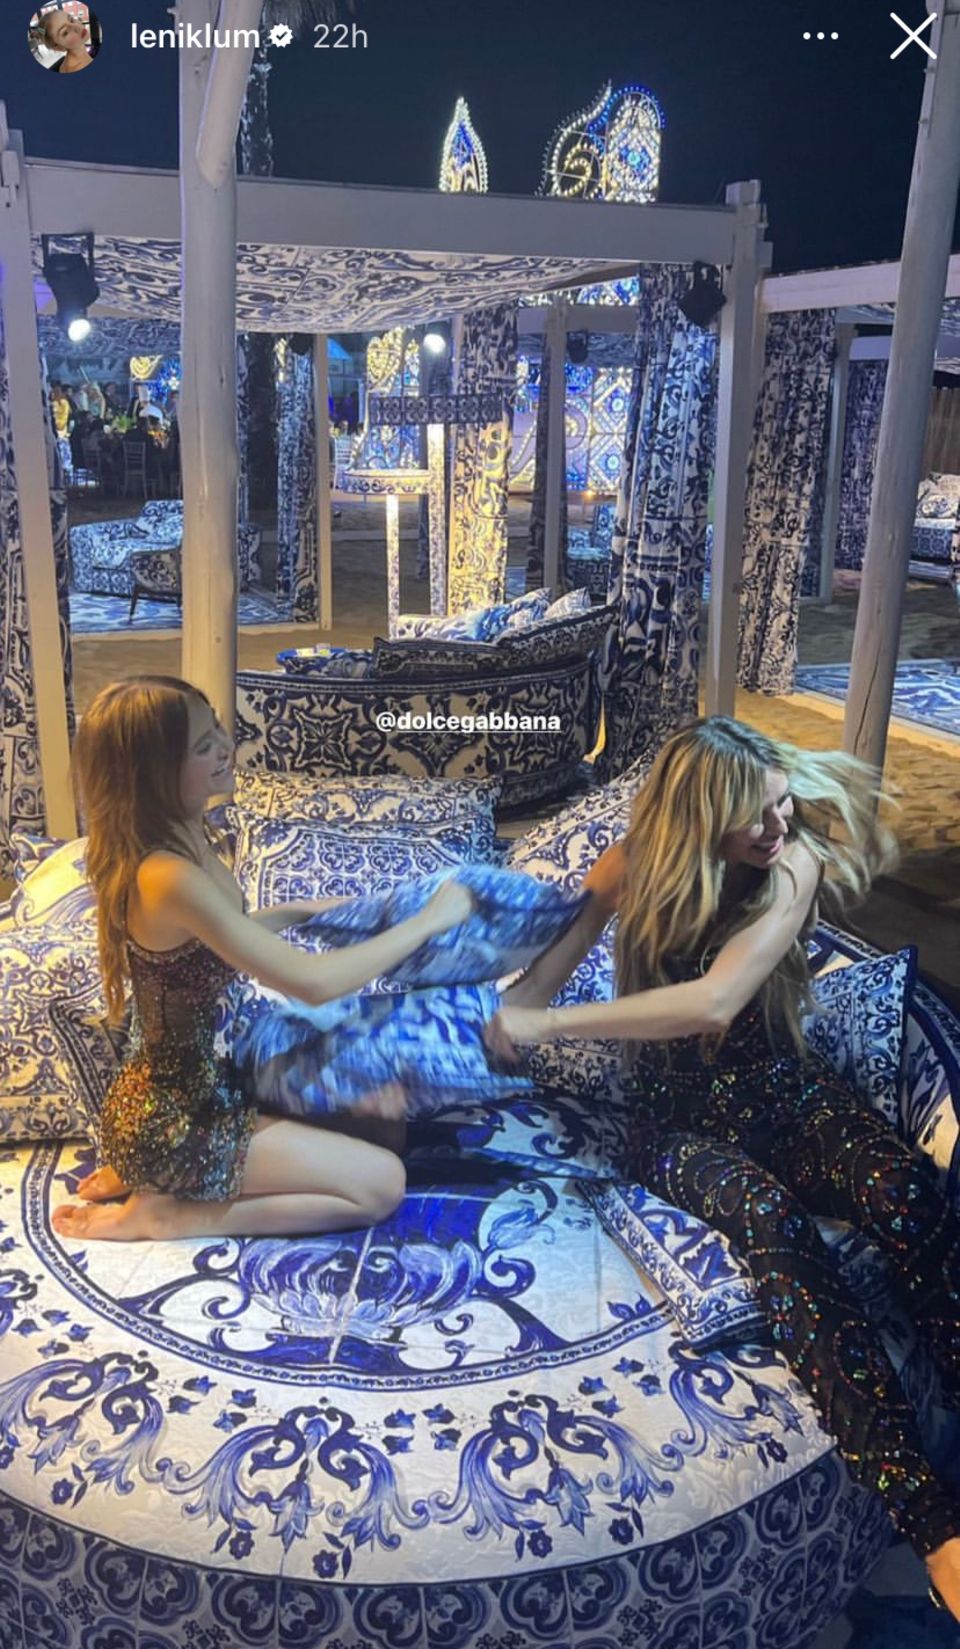 Lenny Klum: Las almohadas volaron entre bastidores en Dolce & Gabbana